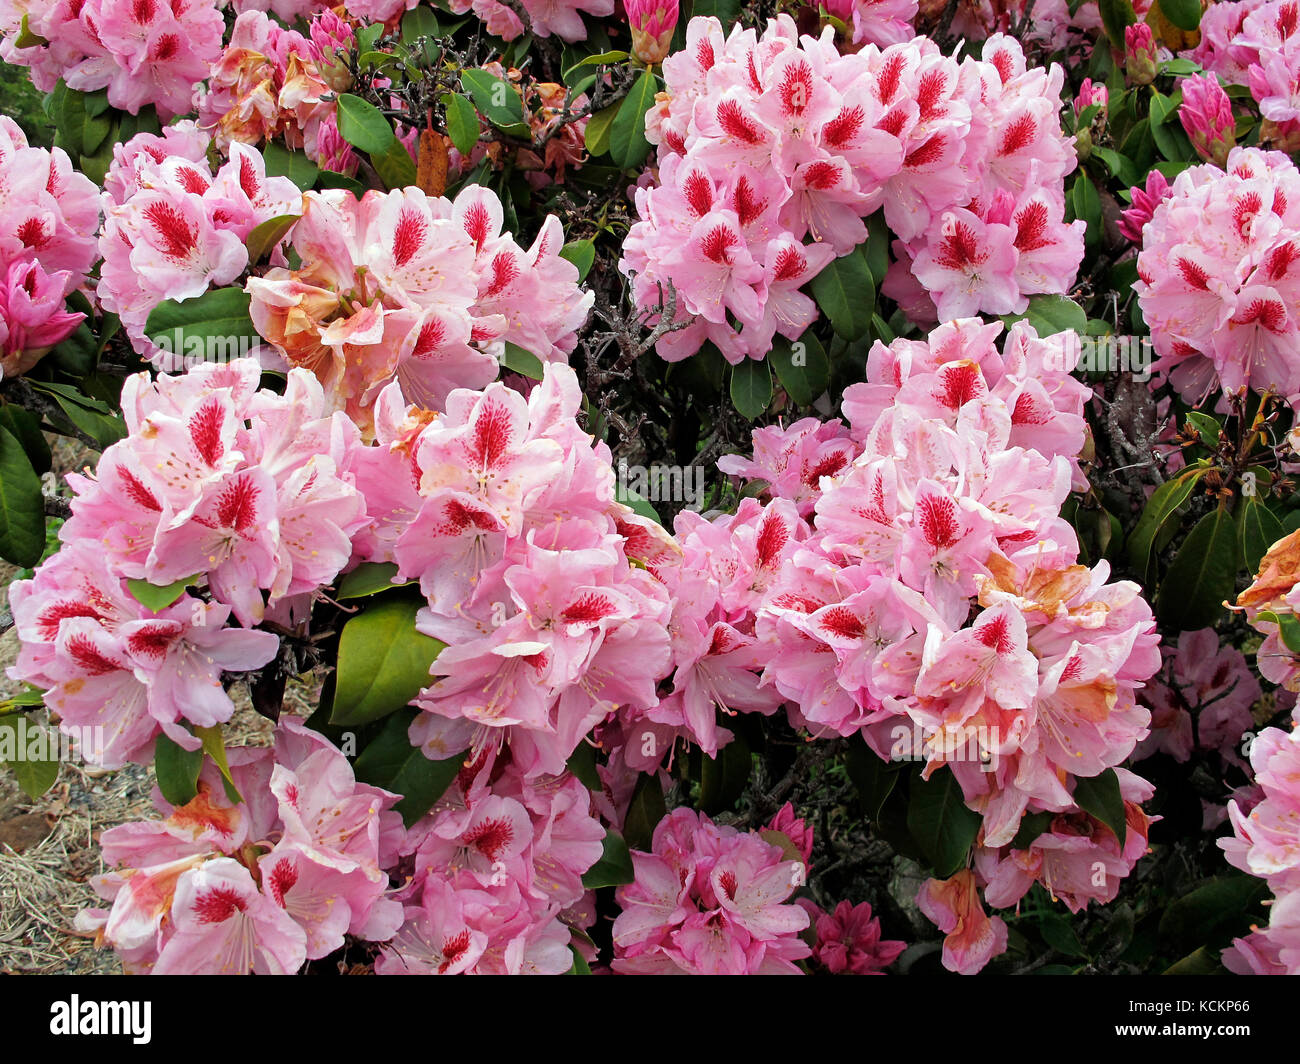 Rhododendron (Rhododendron sp.) auffällige rosa Blüten. Emu Valley Rhododendron Gardens, in der Nähe von Burnie, Tasmanien, Australien Stockfoto